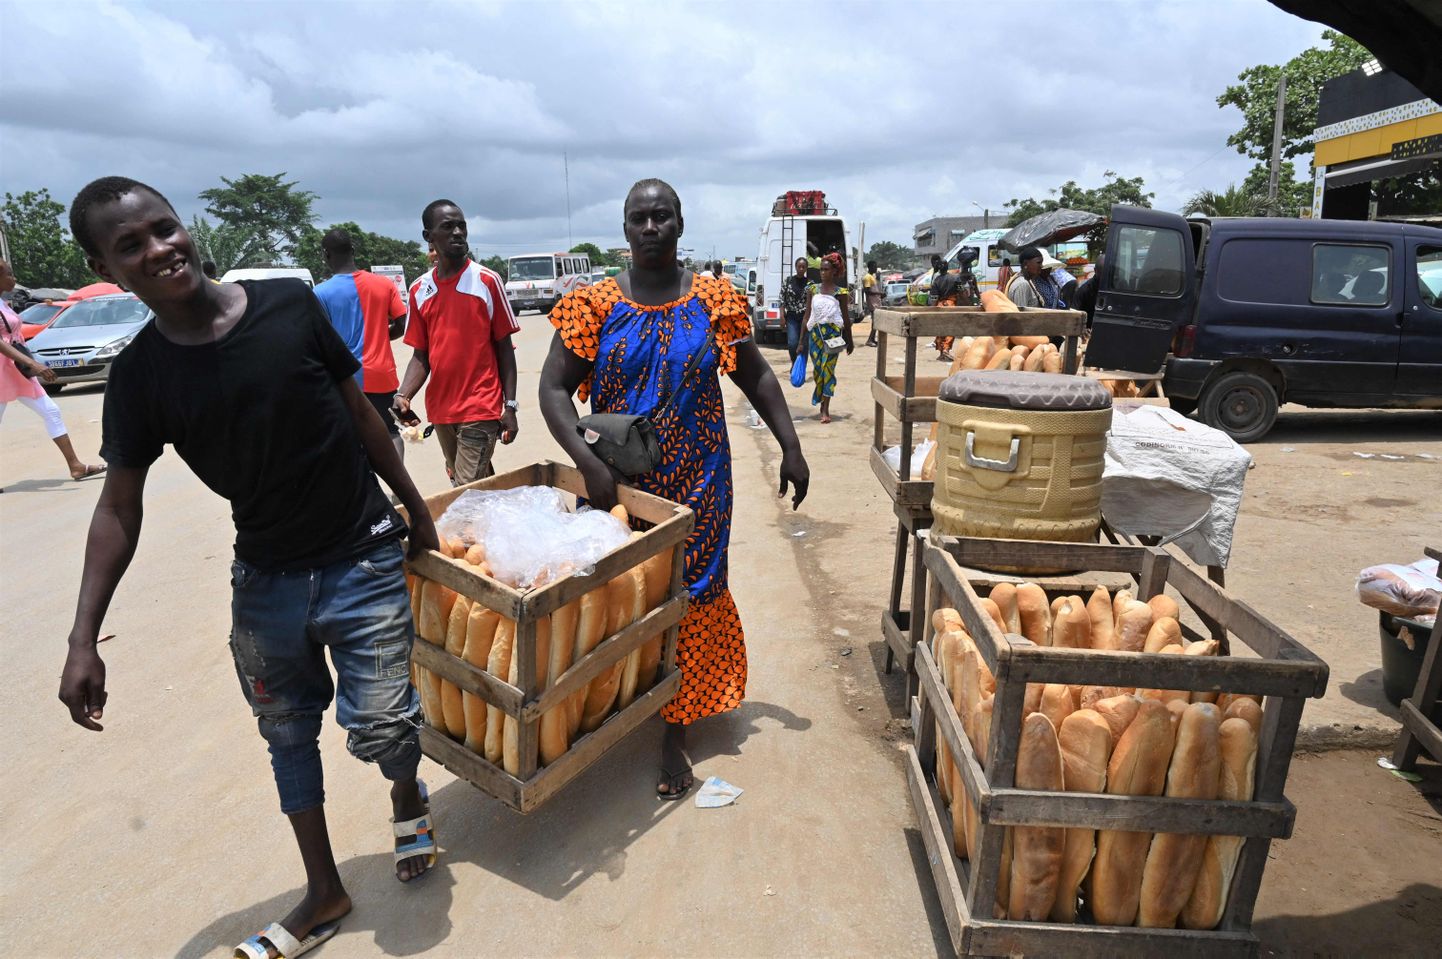 Уличные торговцы несут корзины с хлебом в Абиджане, столице Кот-д'Ивуара. Правительство страны установило верхний предел цен на некоторые продукты питания, такие как пшеничная мука.